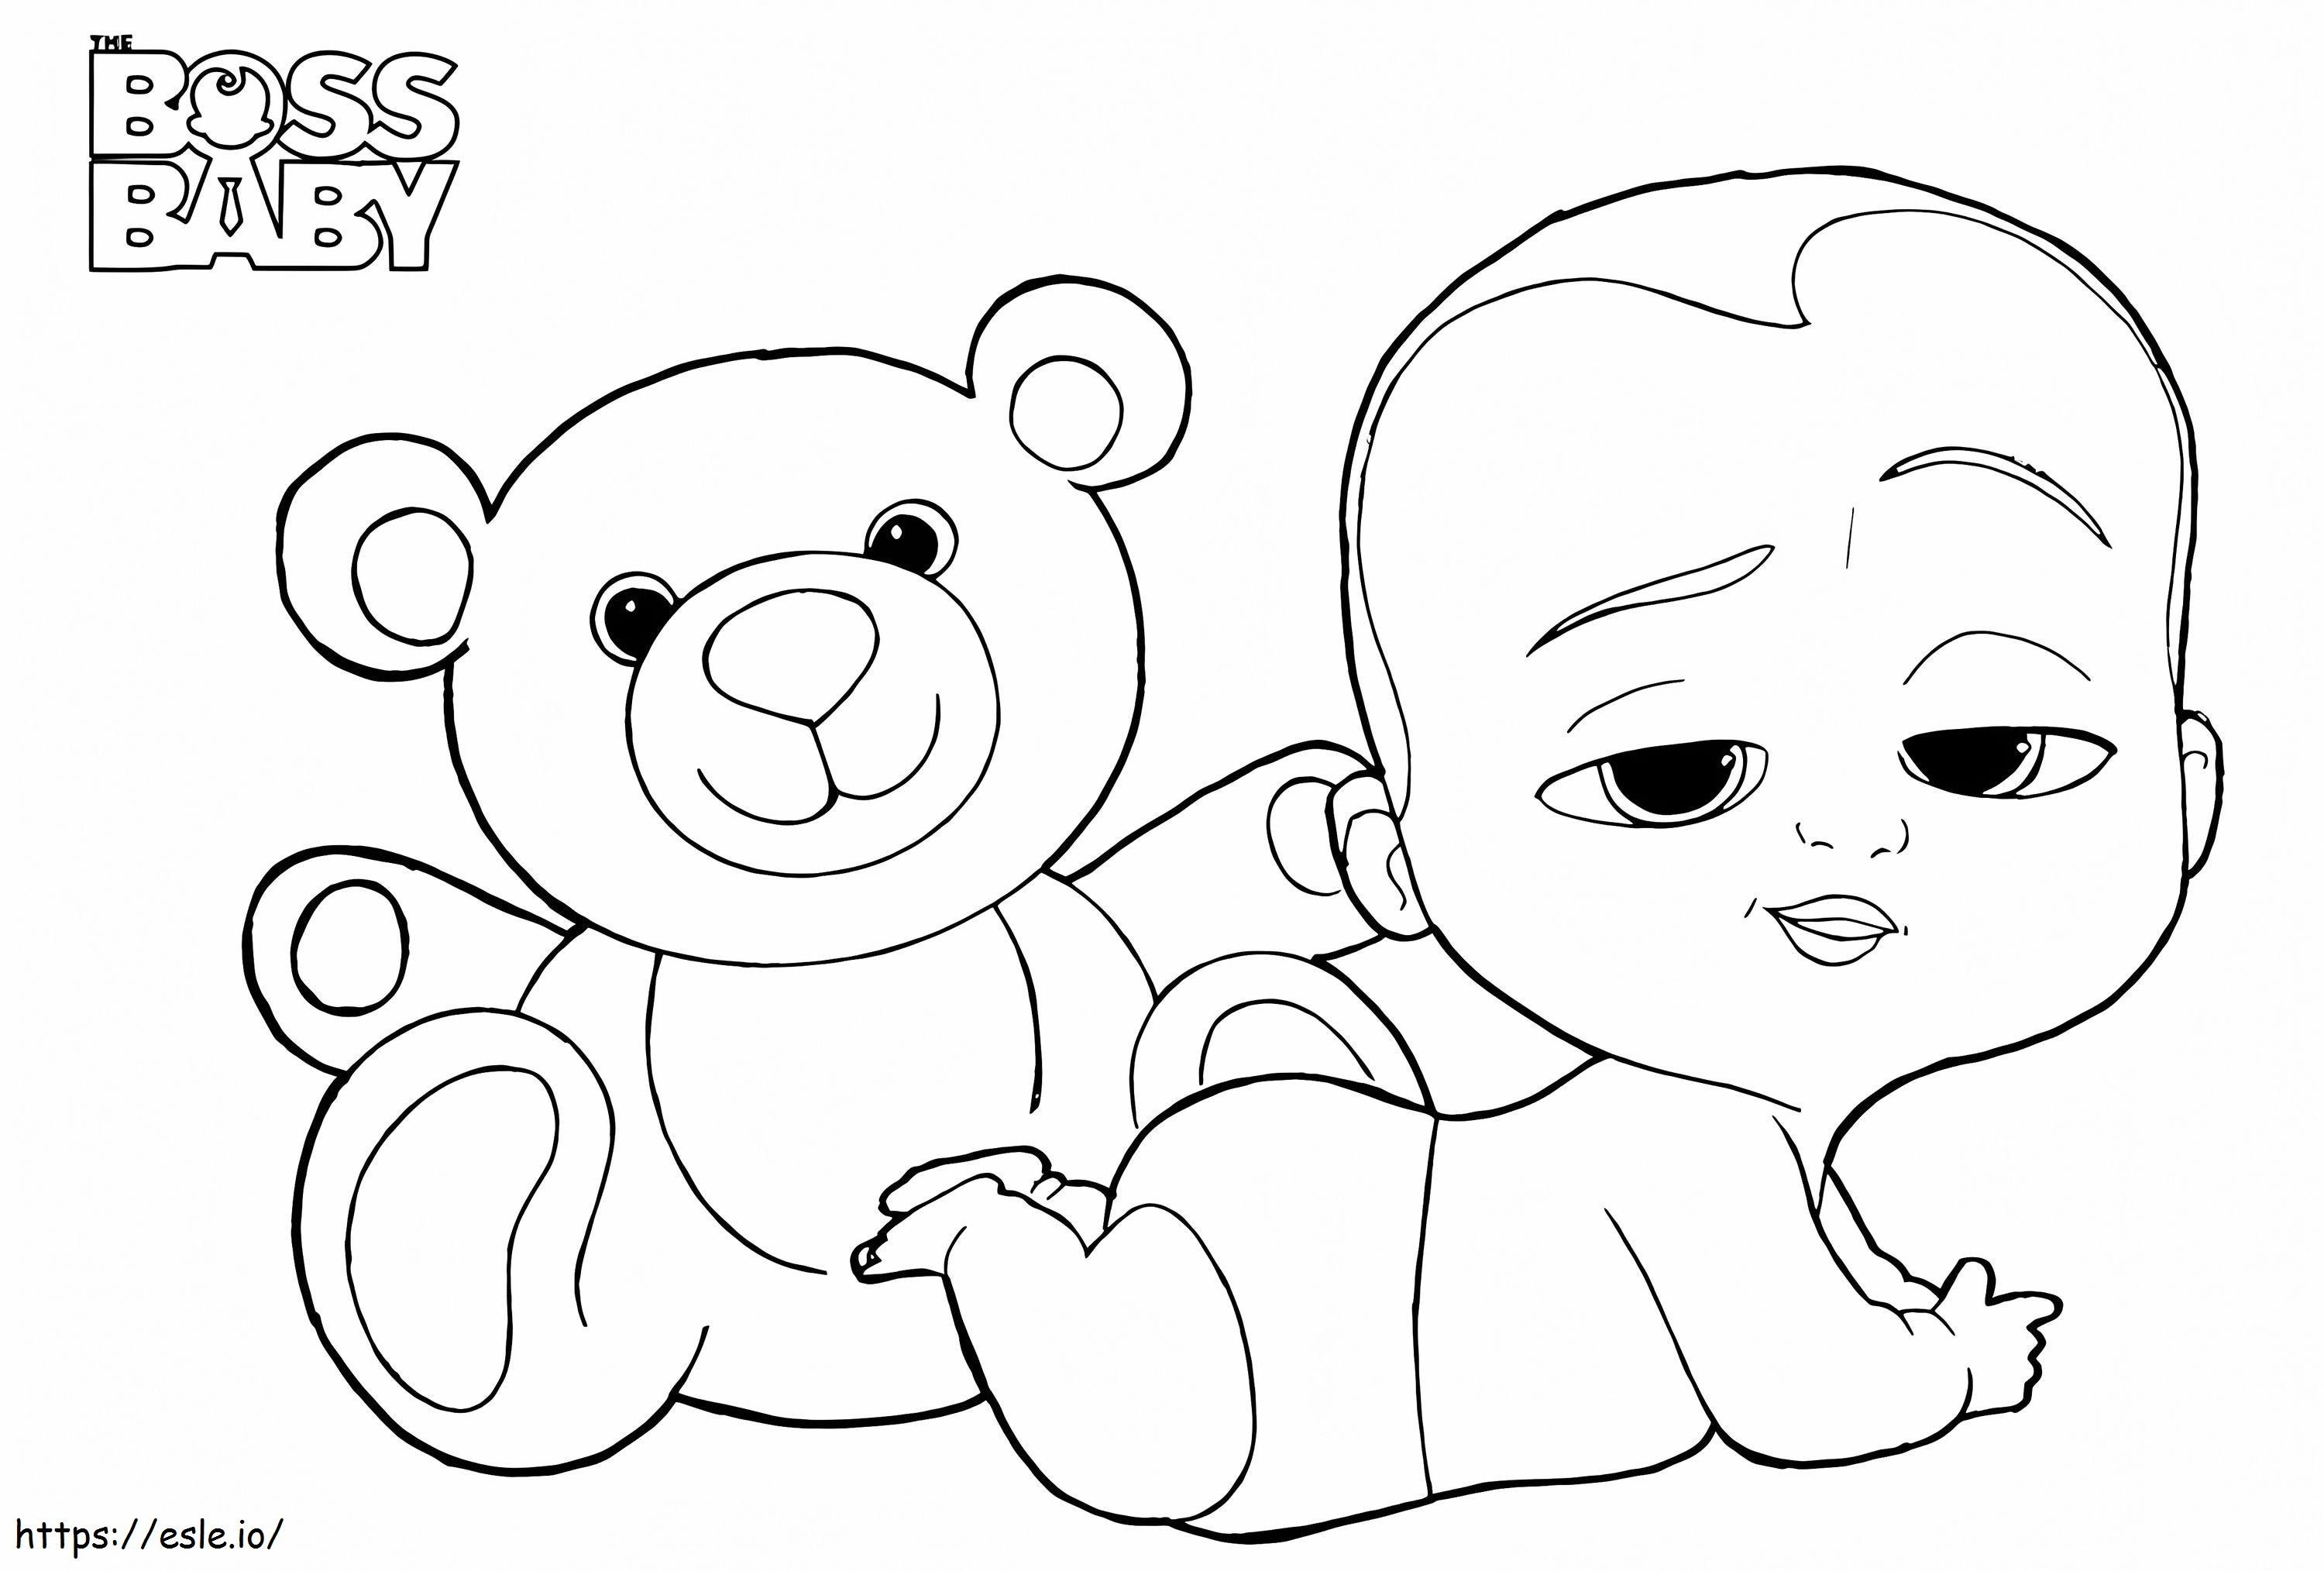 _Boss Baby E Teddy A4 da colorare